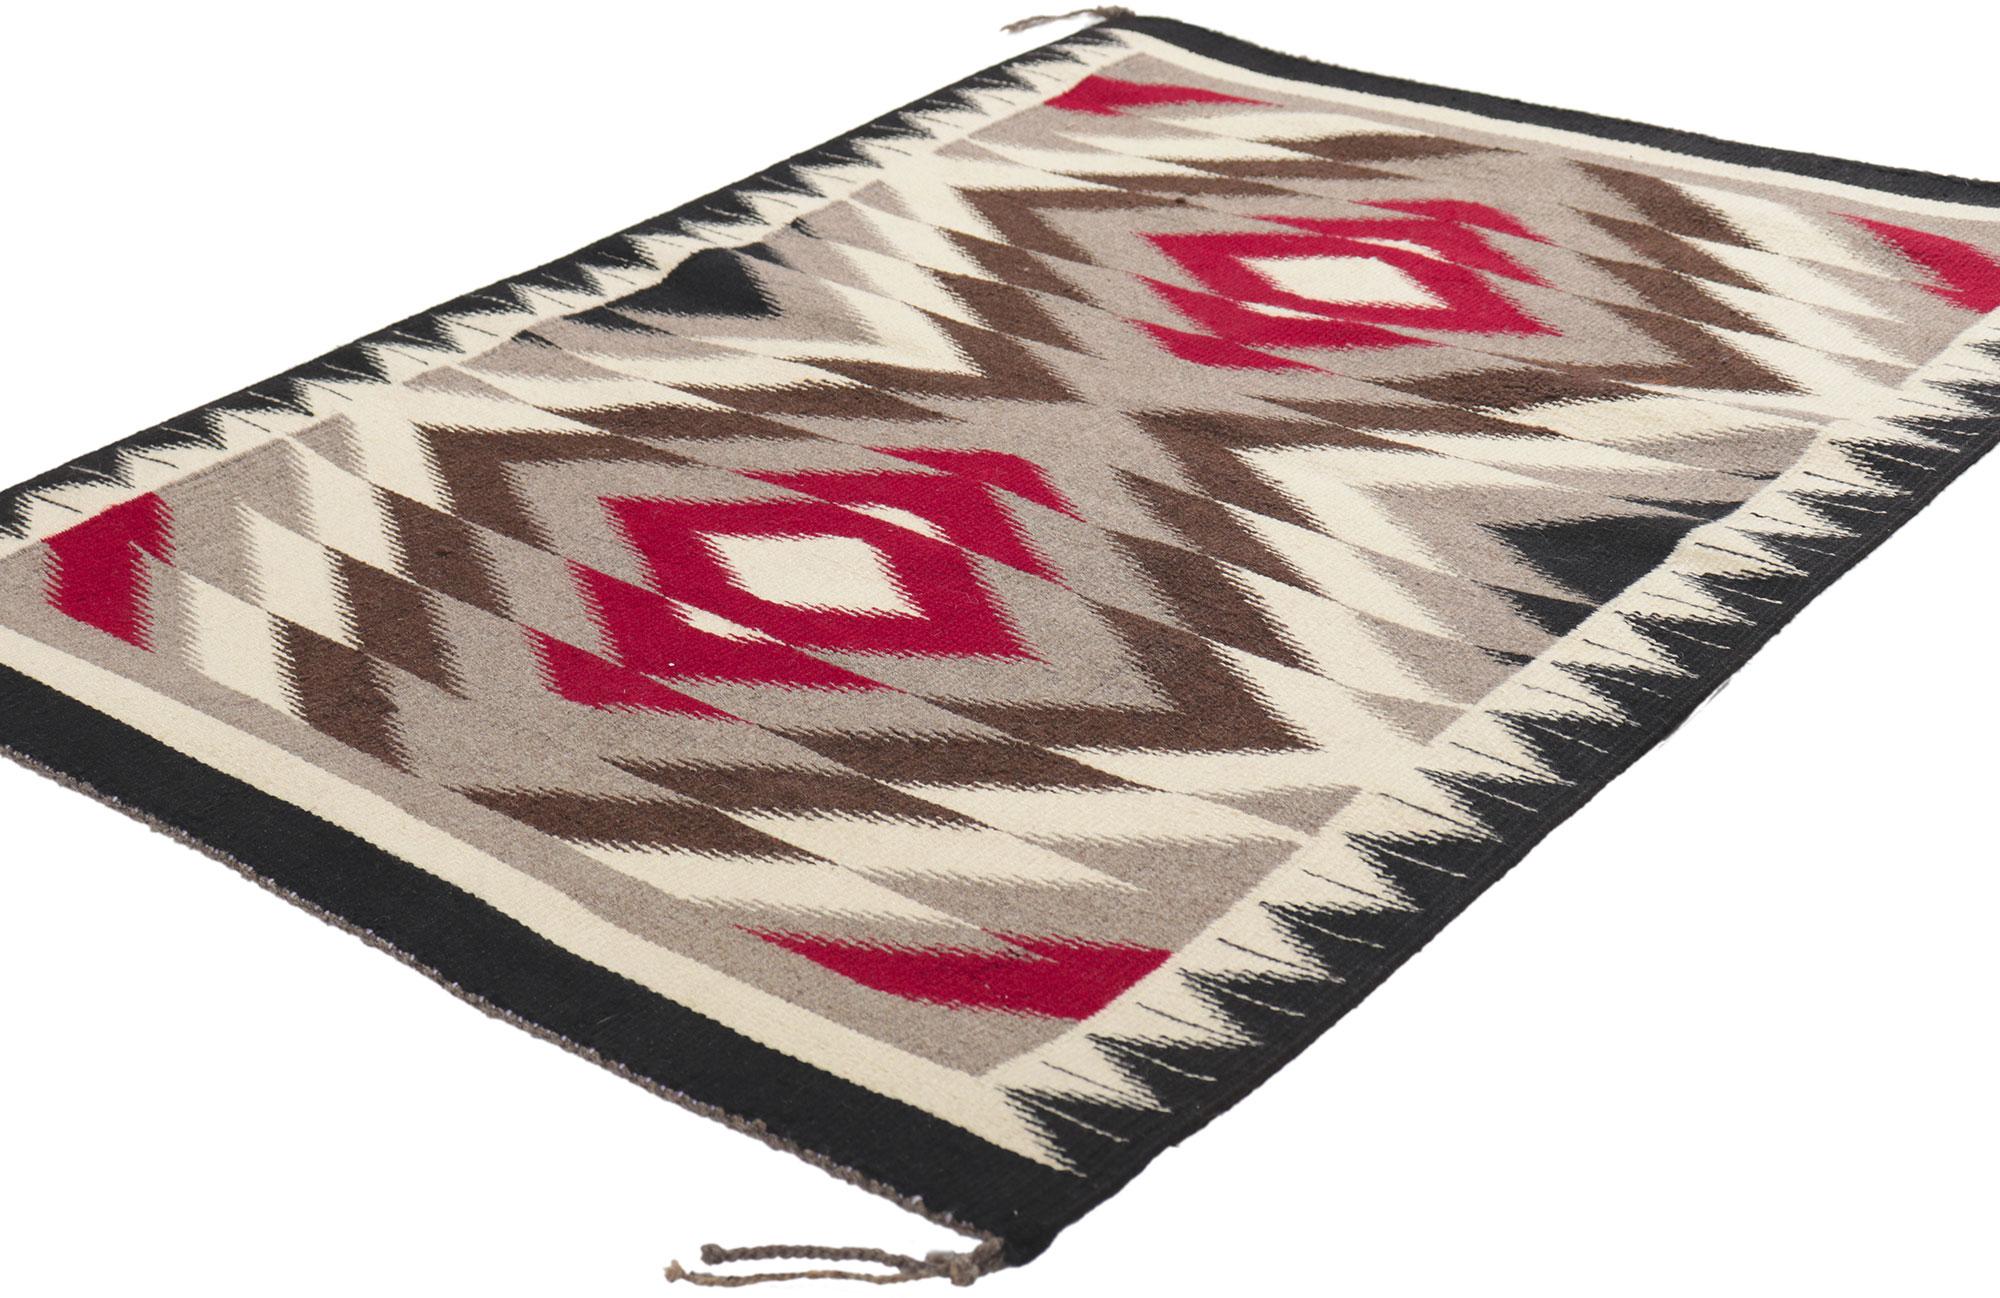 78424 Tapis Vintage Navajo Eye Dazzler, 02'05 x 03'05. Plein de petits détails et d'un design expressif, ce tapis Navajo vintage en laine tissé à la main est une vision captivante de la beauté tissée. Le champ abrasé présente un losange